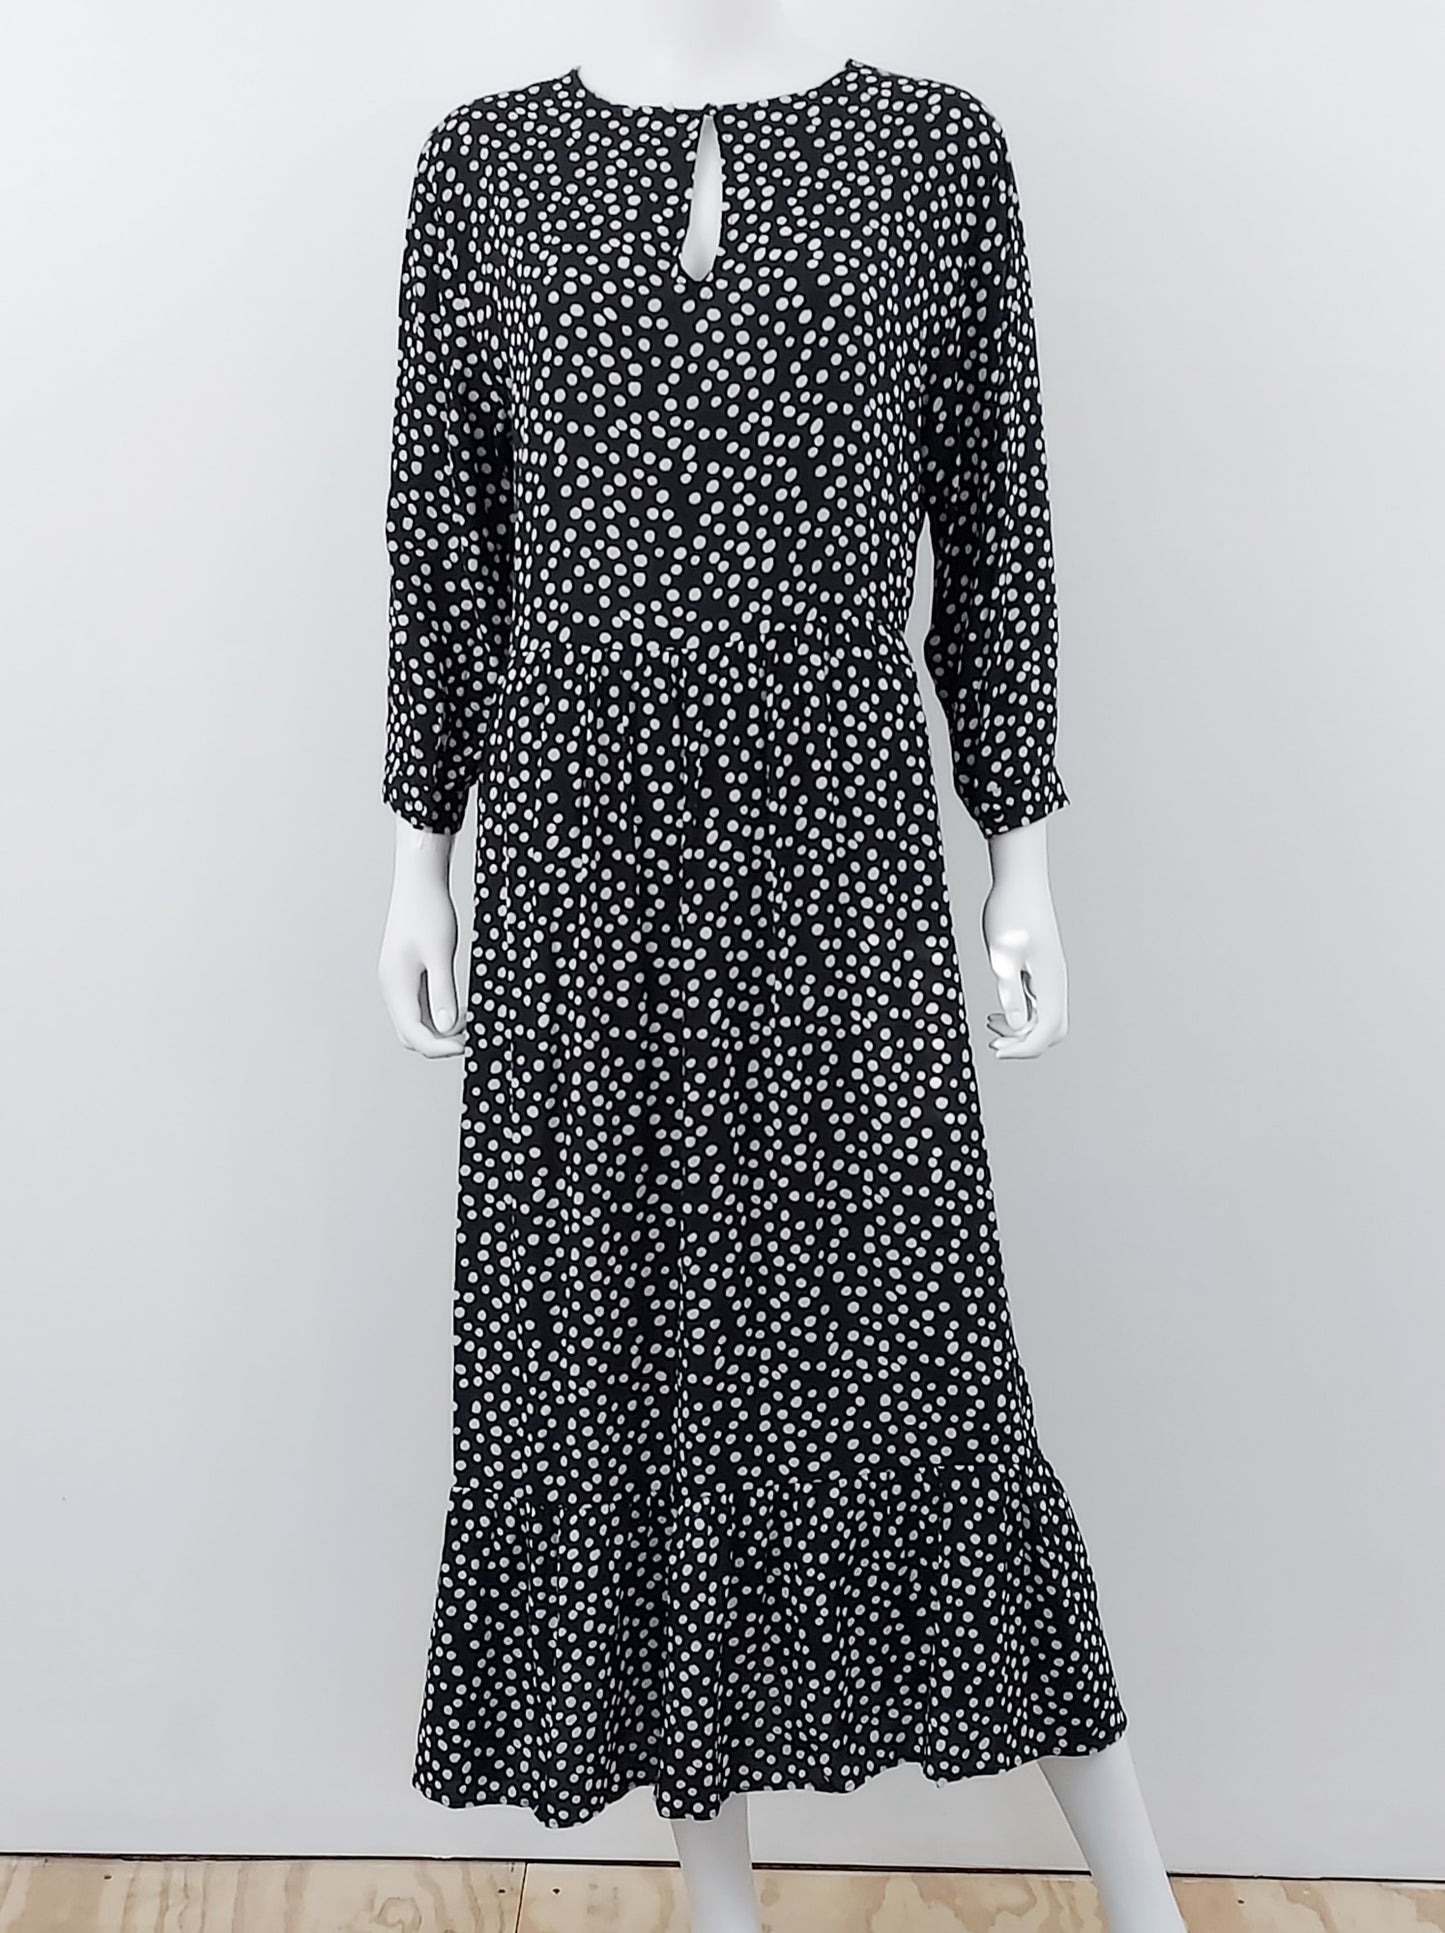 Polka Dot Maxi Dress Size Medium